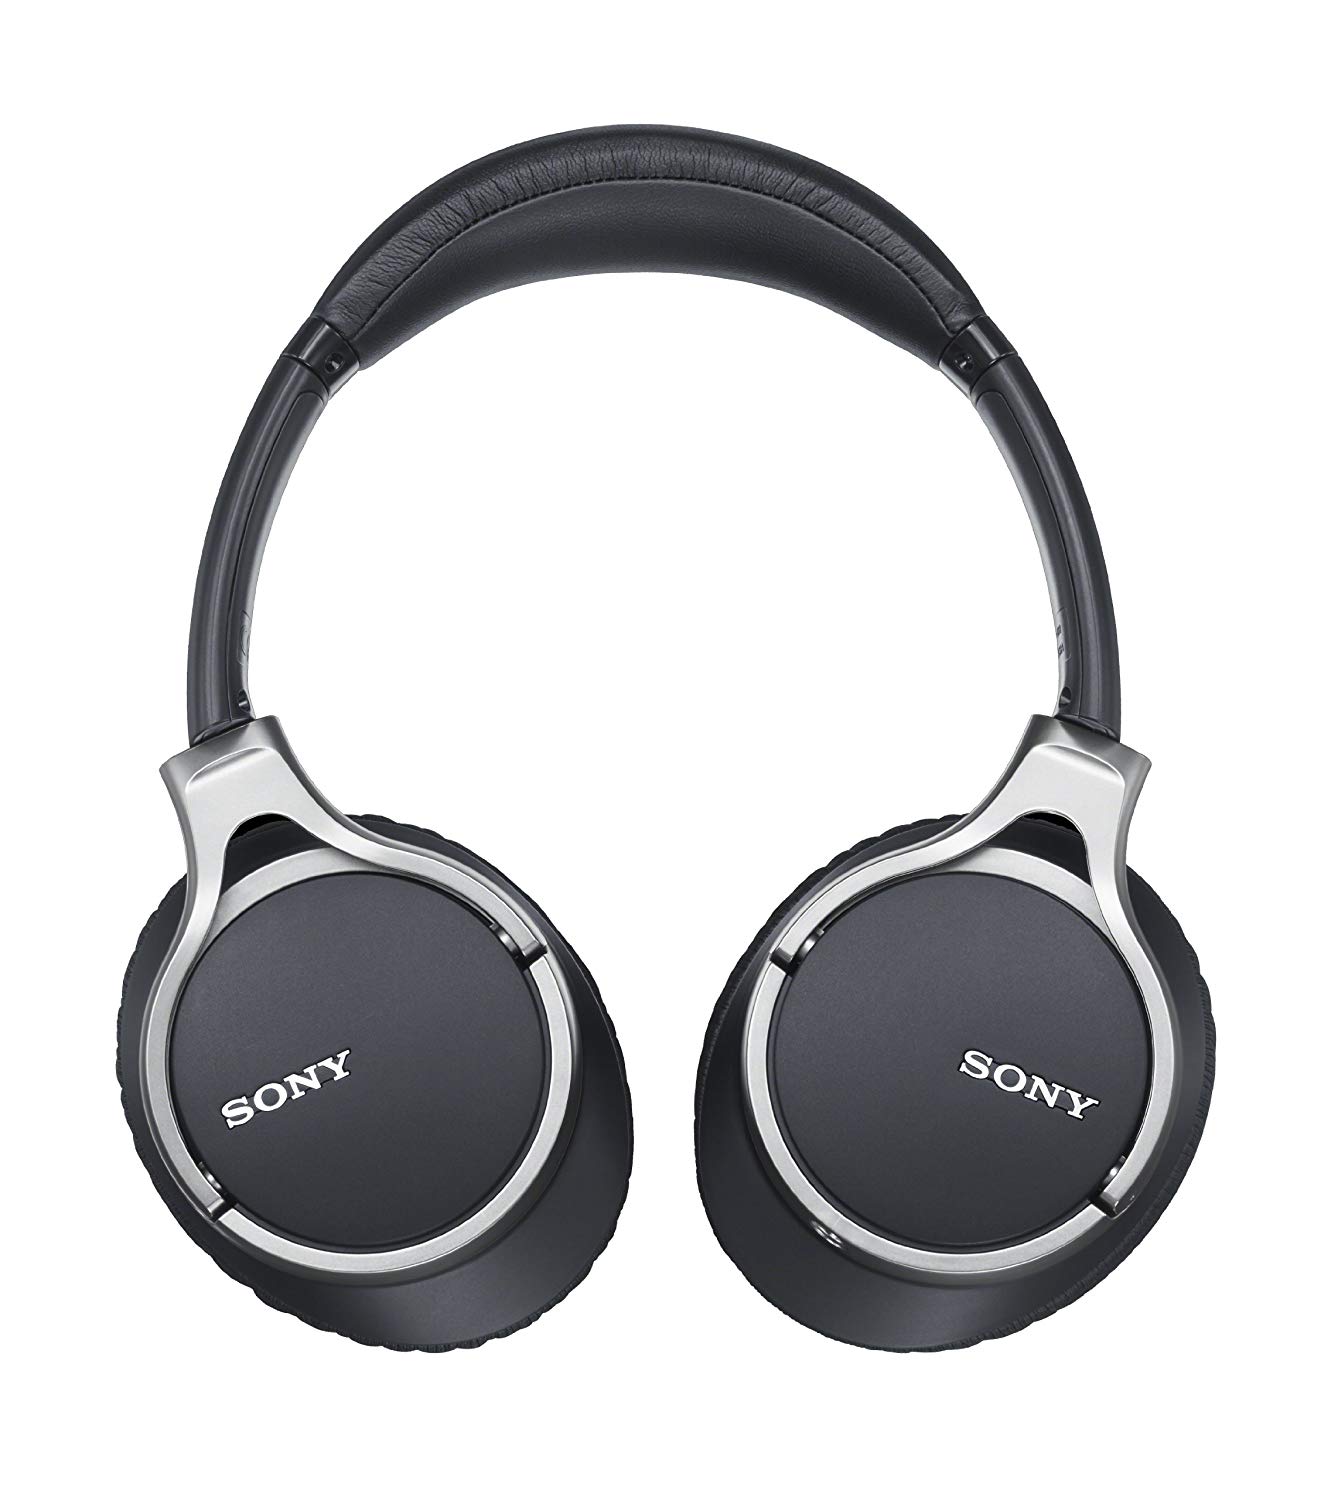 Audio shop cung cấp tai nghe Sony MDR-10R chính hãng